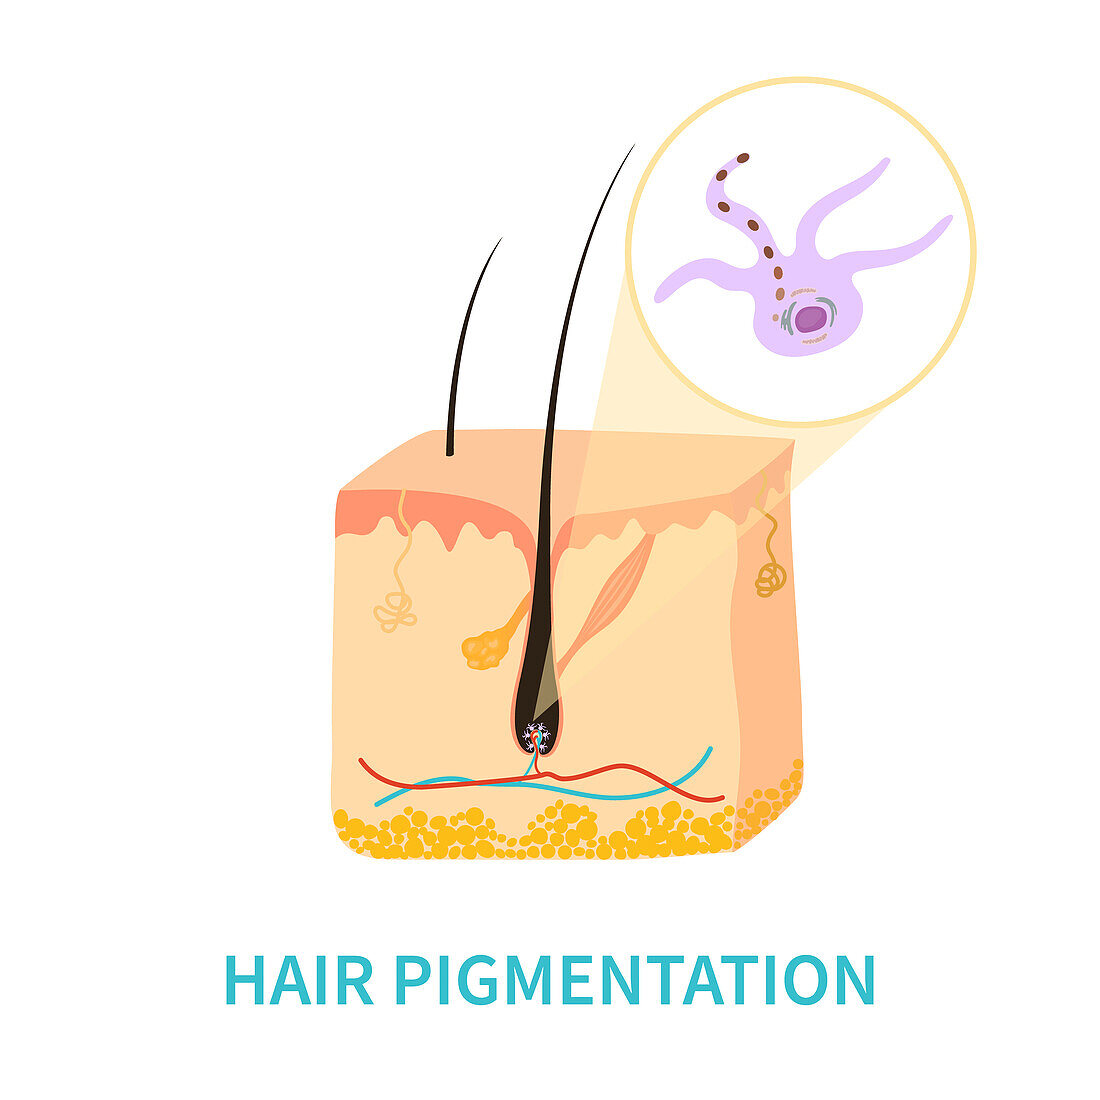 Hair colour pigmentation, conceptual illustration